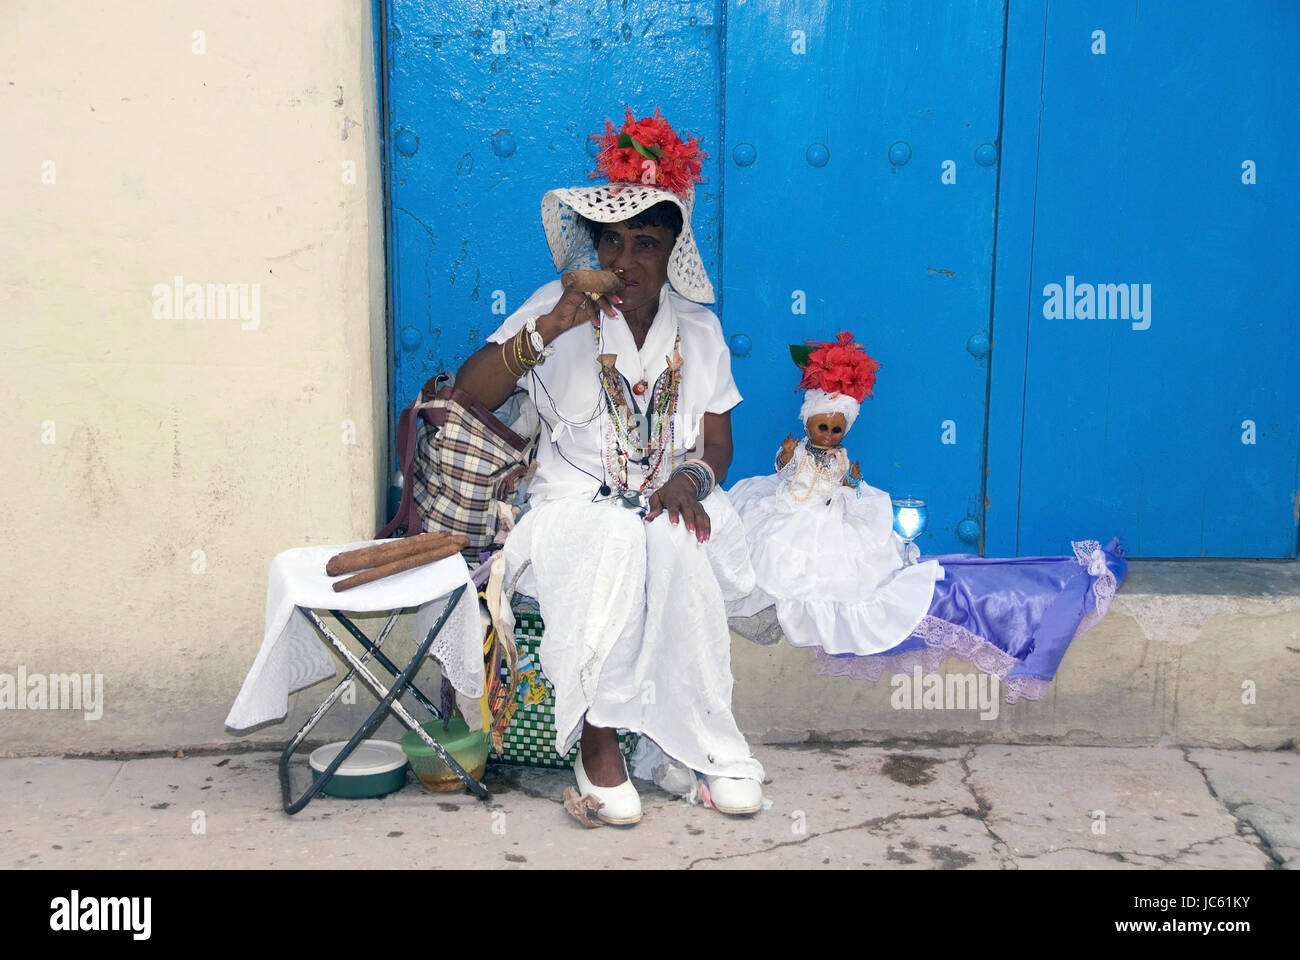 Cuba, el Caribe, La Habana, mujer con cigarro en el casco antiguo de la ciudad, Kuba, Karibik, Havanna, Frau mit Zigarre in der Altstadt Foto de stock